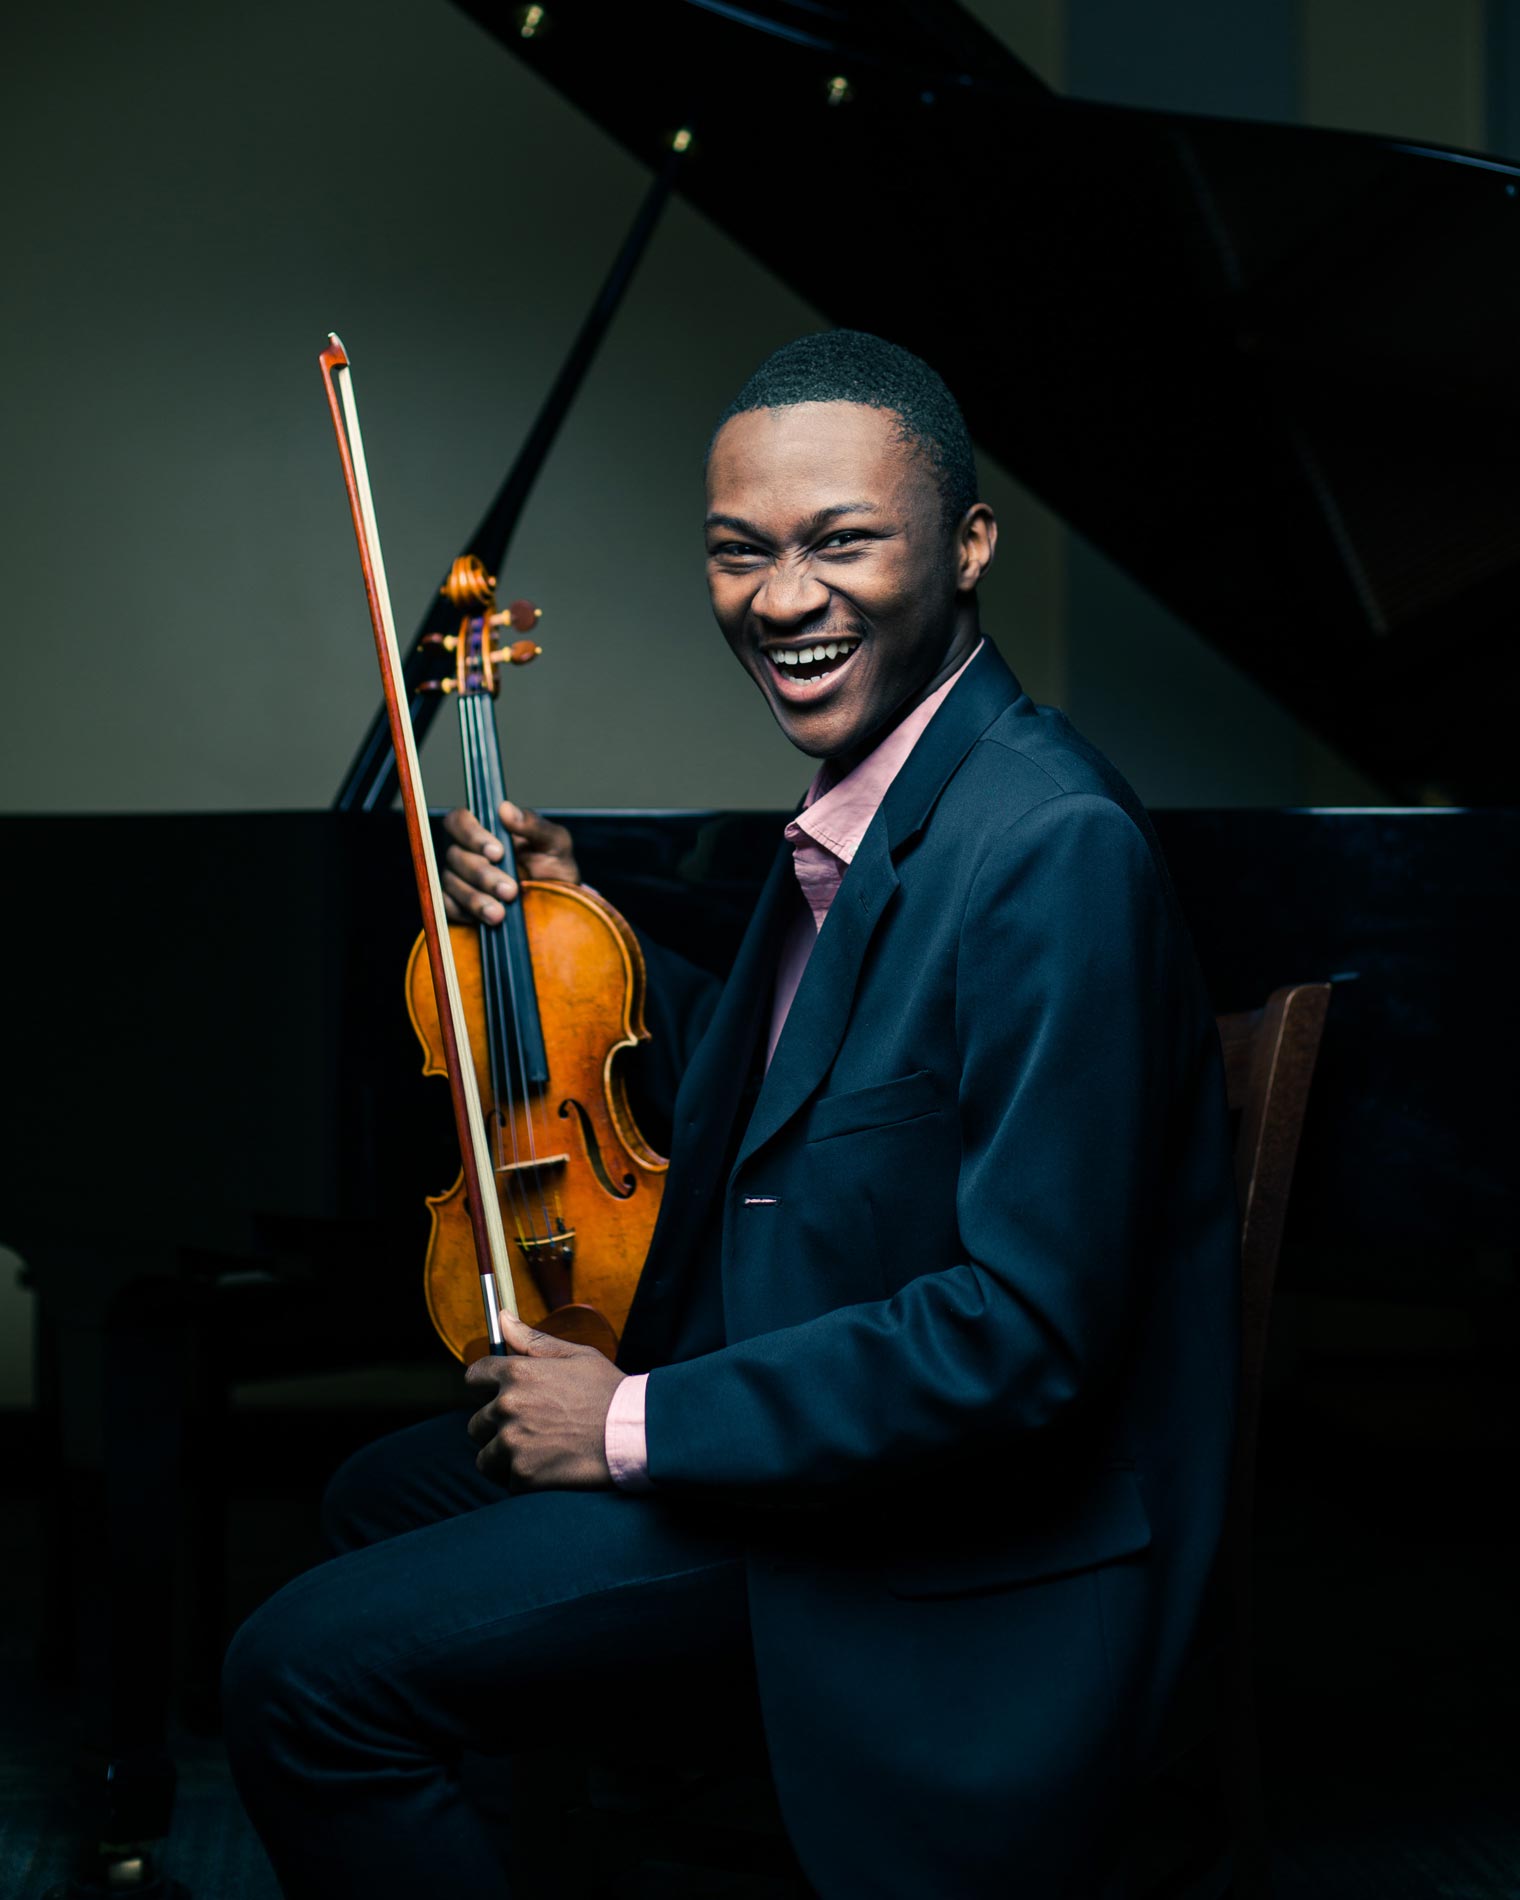 Manny Houndo PSU Violinist